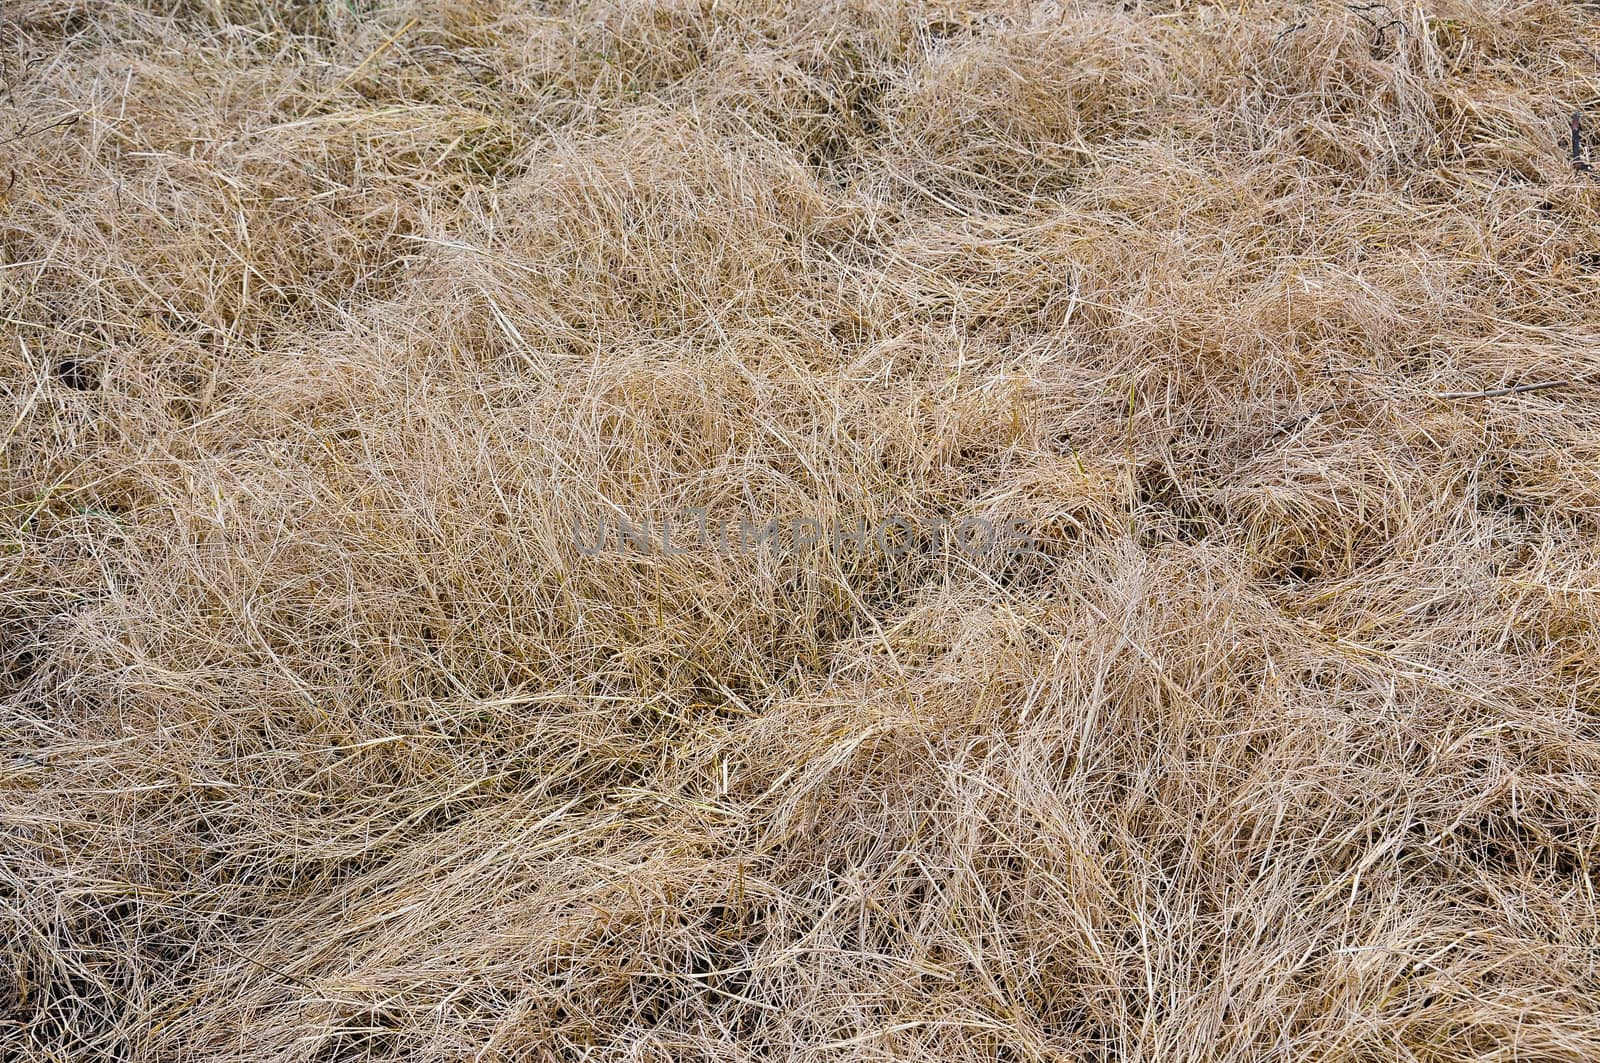 Grass dry pattern